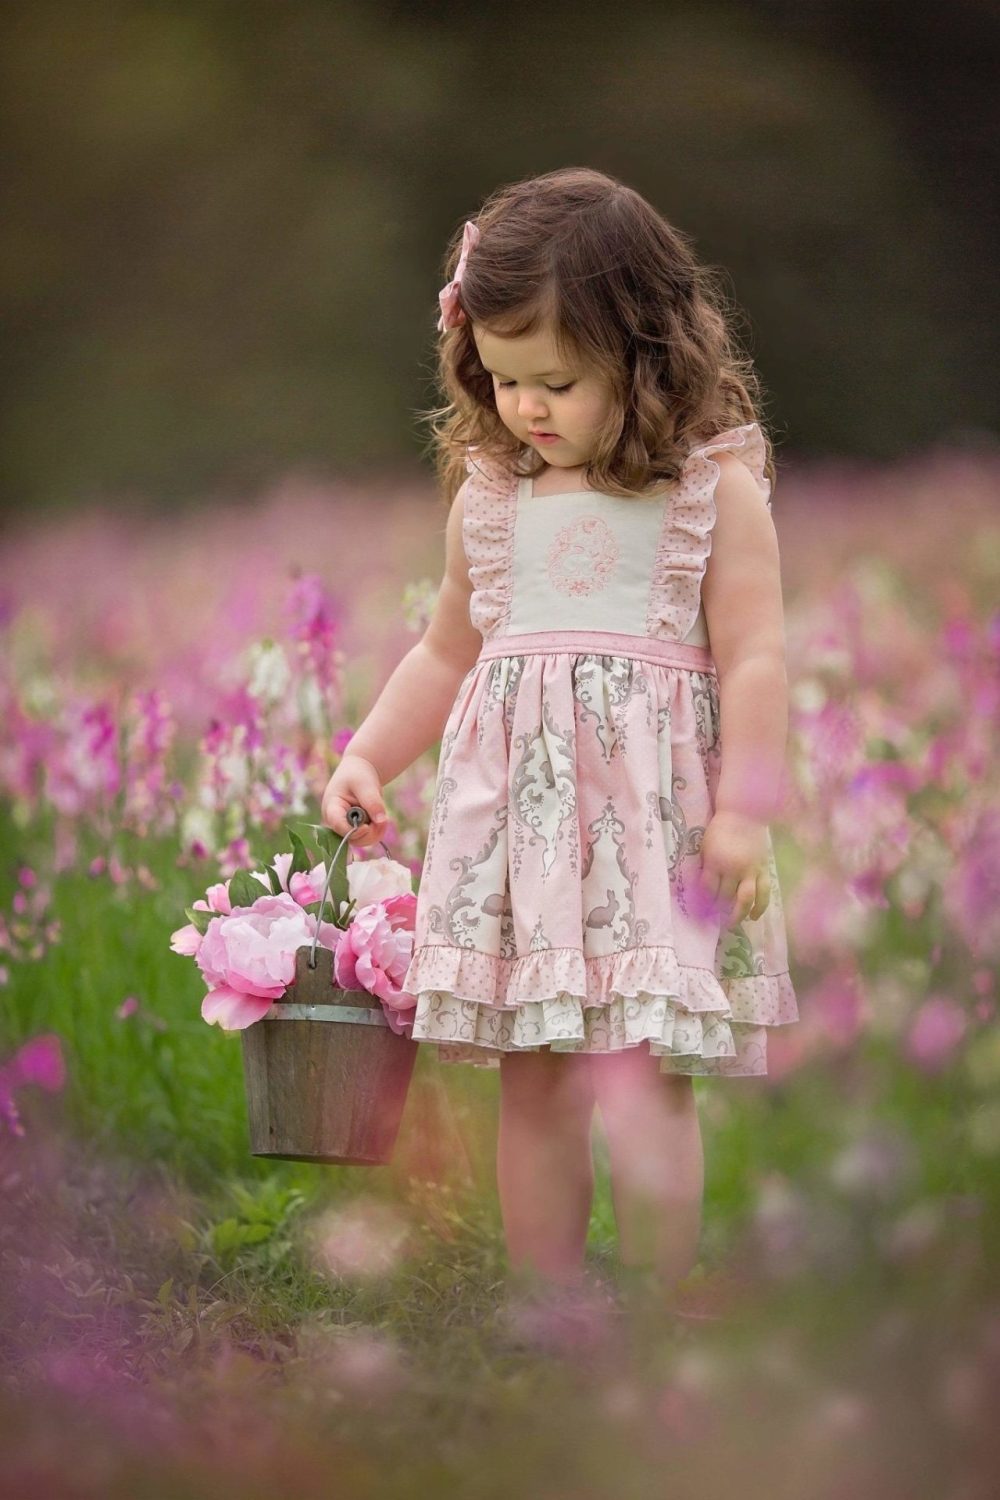 April Pink Easter Flutter Dress - Kinder Kouture